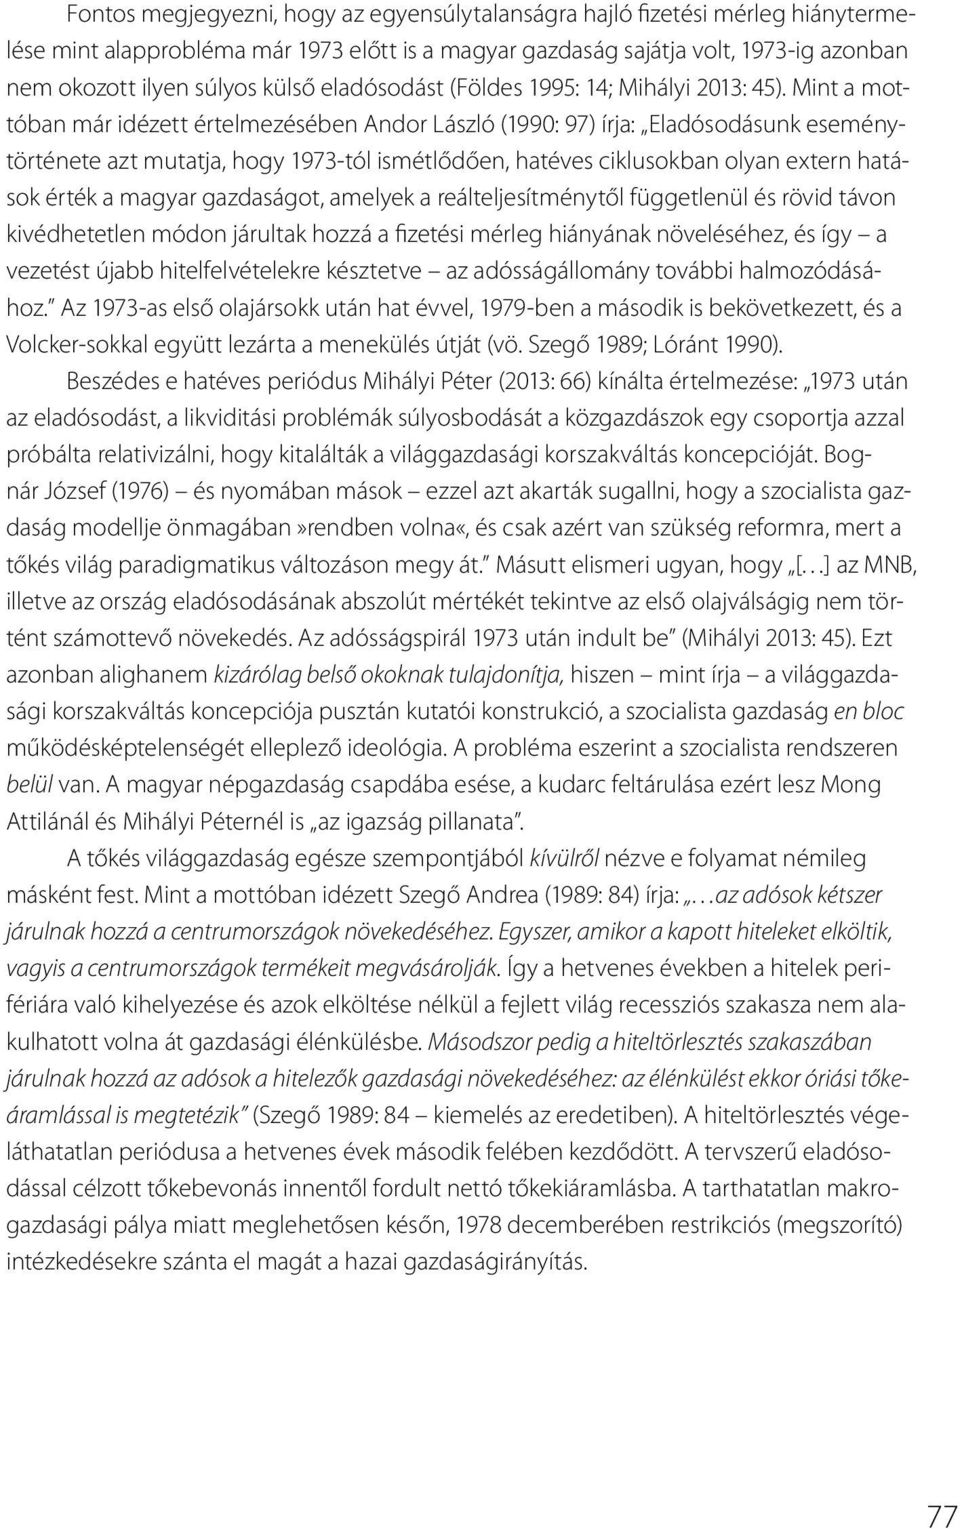 Mint a mottóban már idézett értelmezésében Andor László (1990: 97) írja: Eladósodásunk eseménytörténete azt mutatja, hogy 1973-tól ismétlődően, hatéves ciklusokban olyan extern hatások érték a magyar